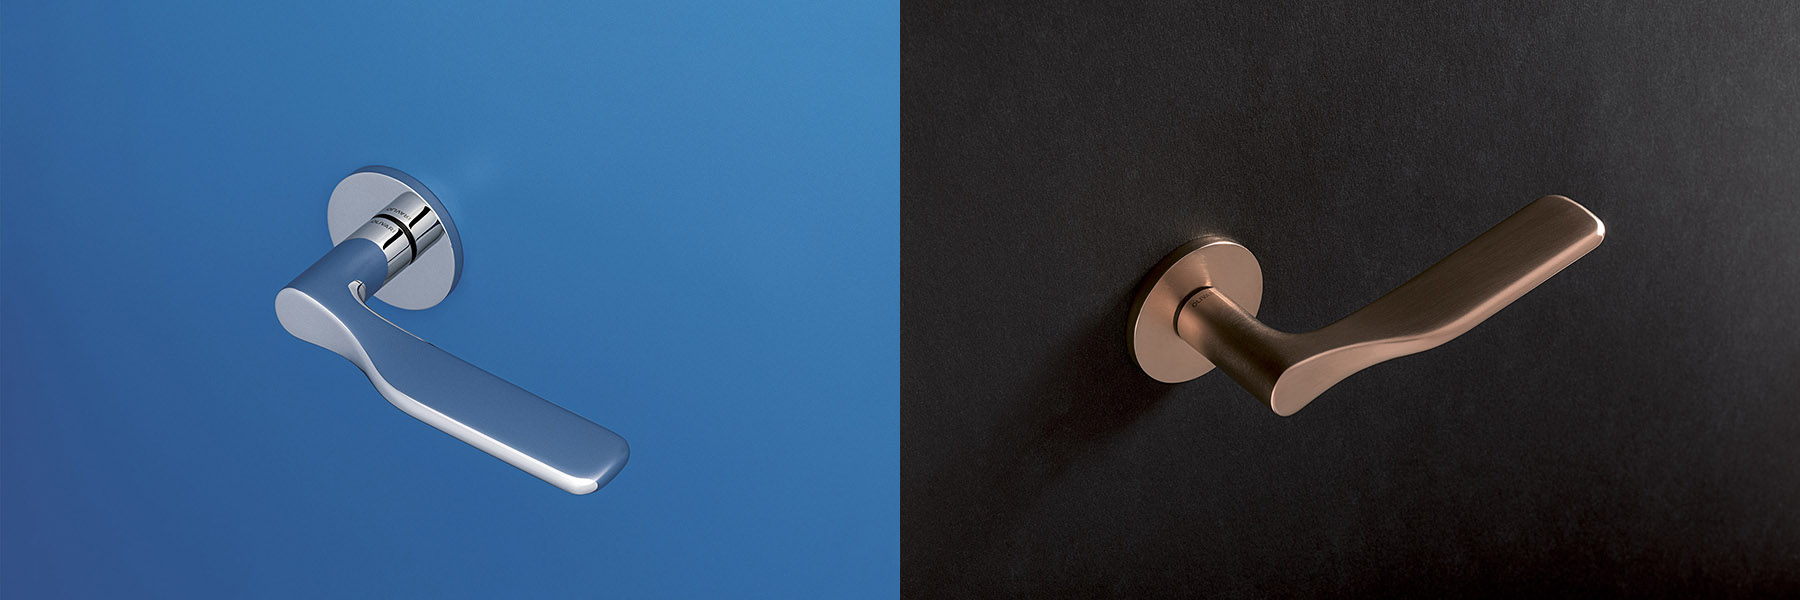 Scopri la maniglia per porta Paddle di Olivari: design ergonomico, eleganza e alta qualità in diverse finiture per adattarsi ad ogni ambiente.